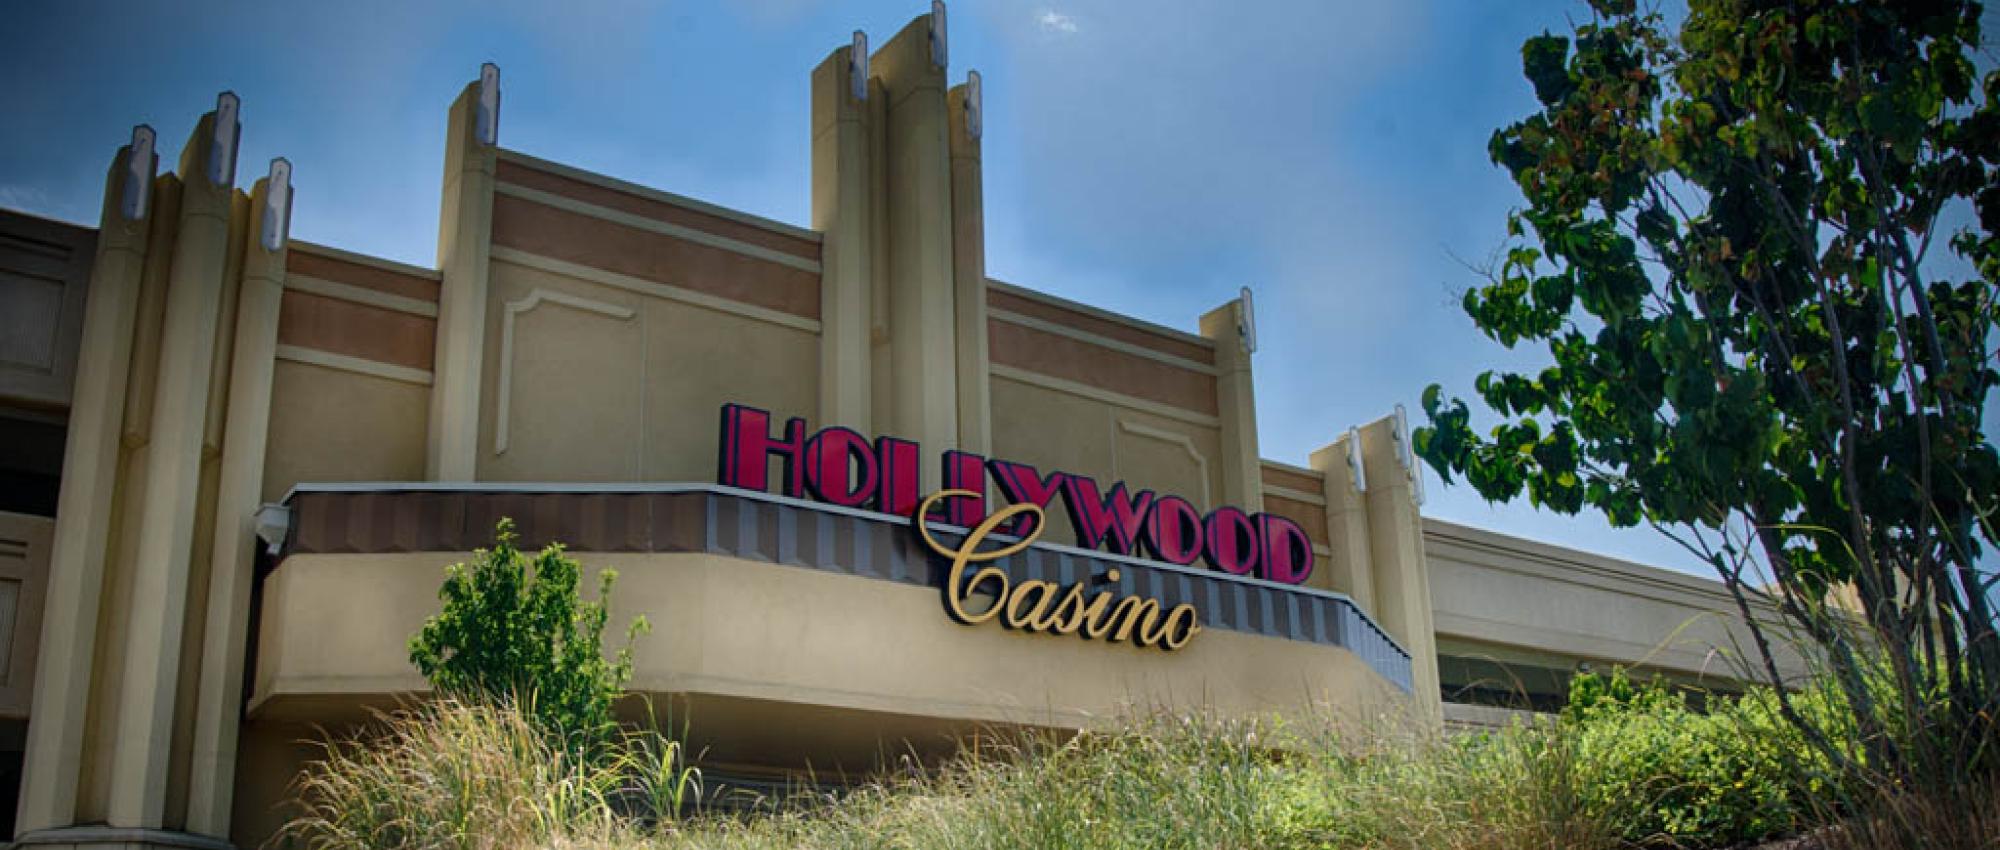 Hollywood Casino | ATMI Precast